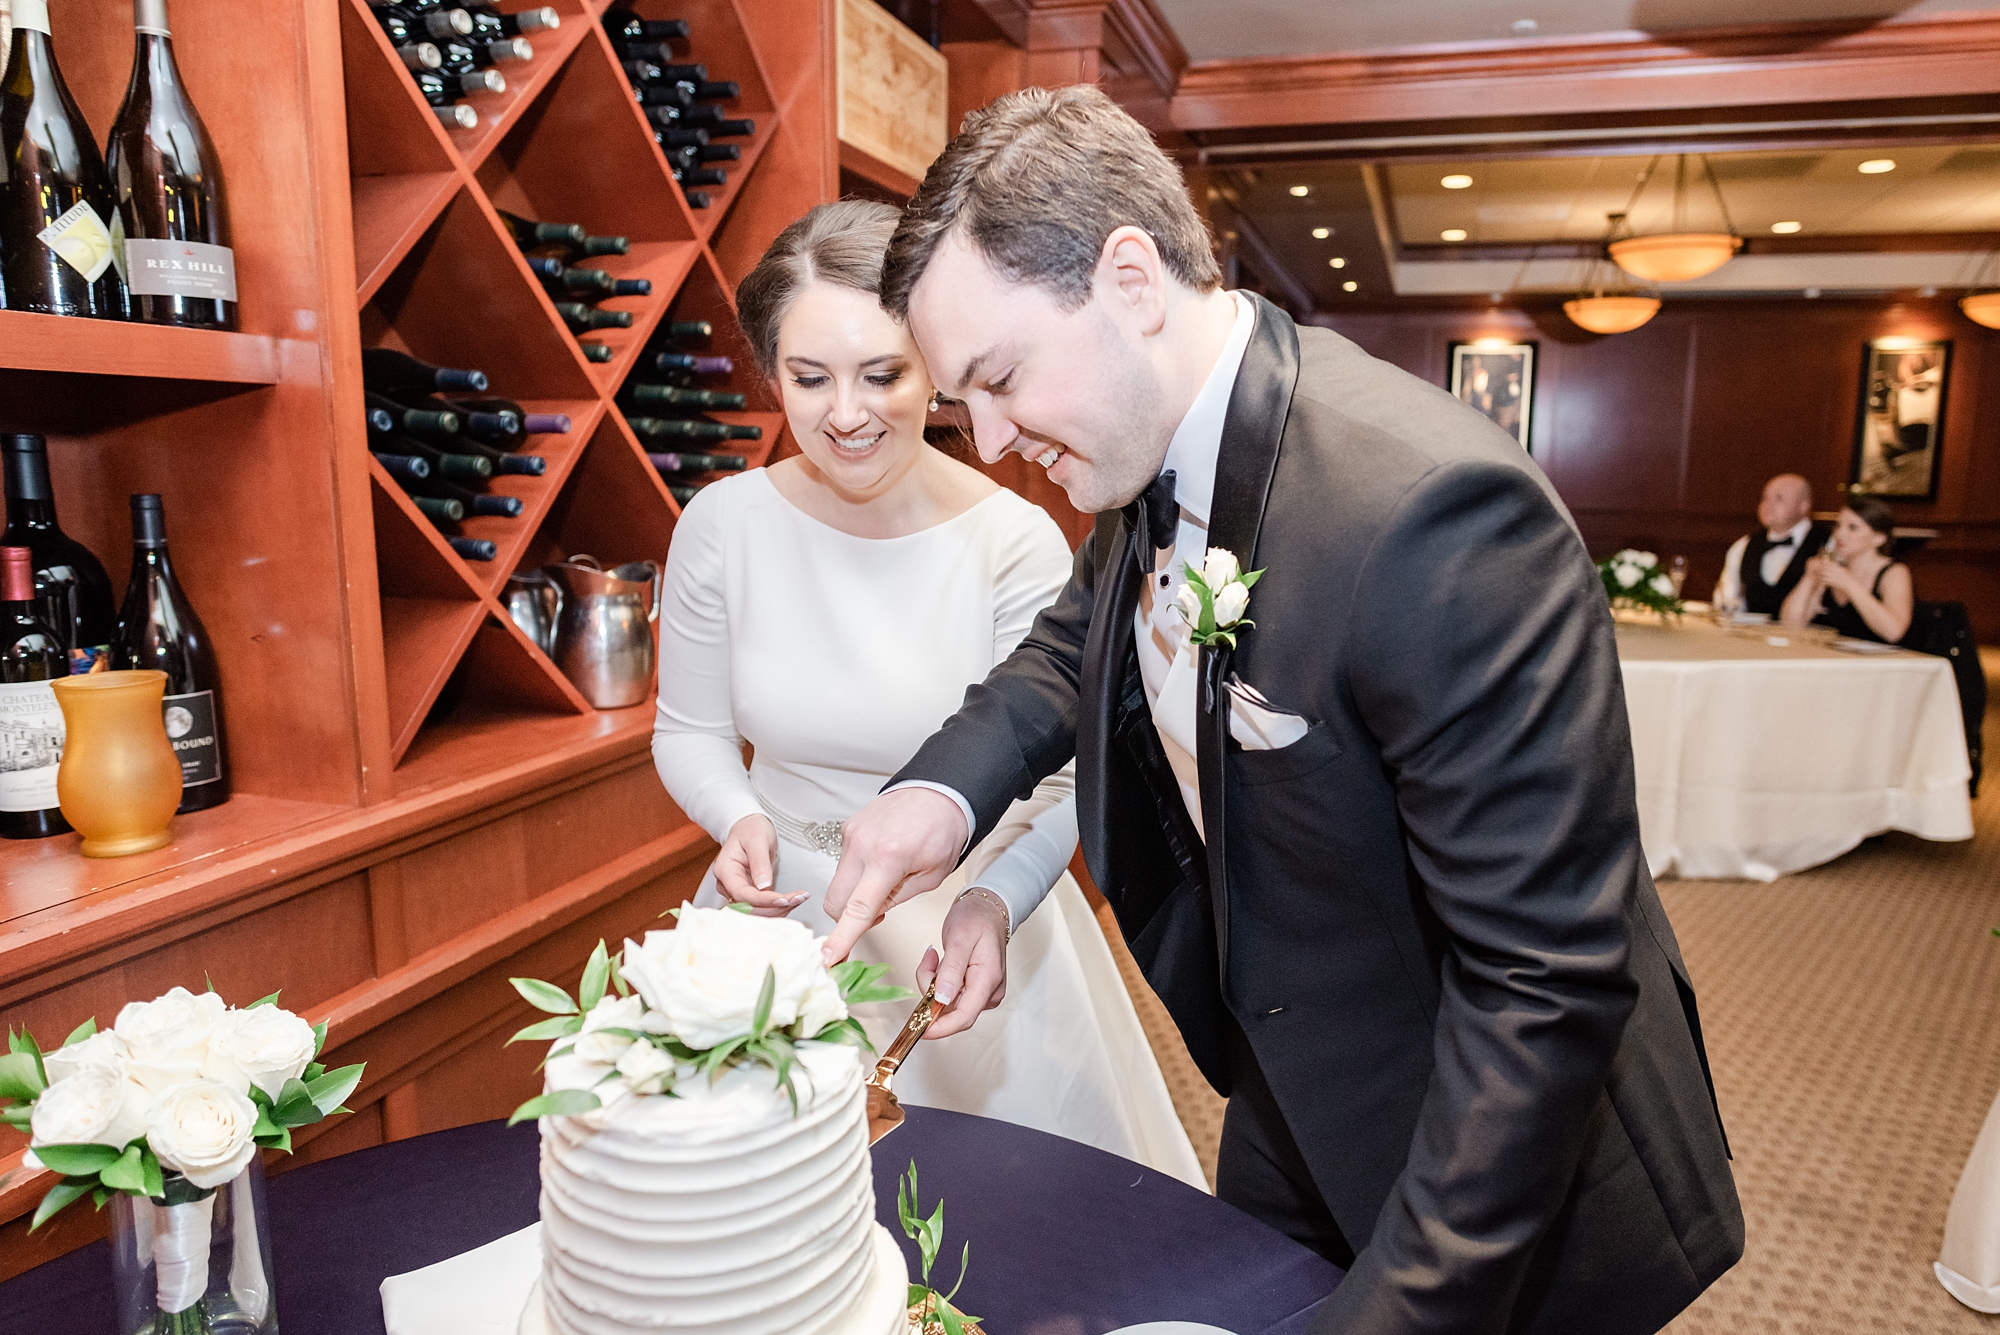 newlyweds cut wedding cake during Ohio wedding reception